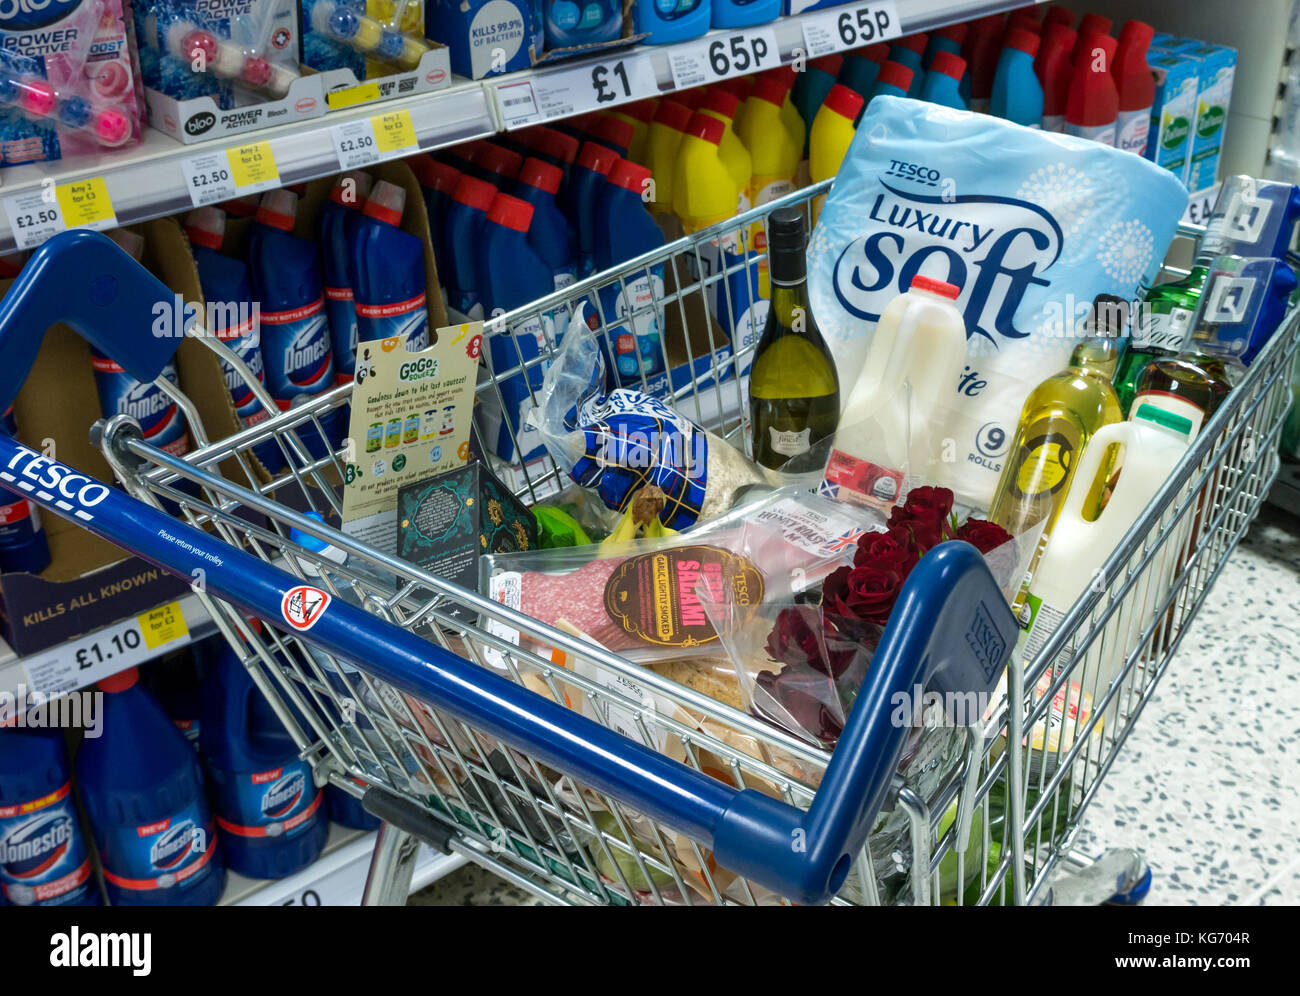 Un carrello della spesa pieno di negozi di generi alimentari nel supermercato nella famiglia di prodotti per la pulizia corsia, Scotland, Regno Unito Foto Stock